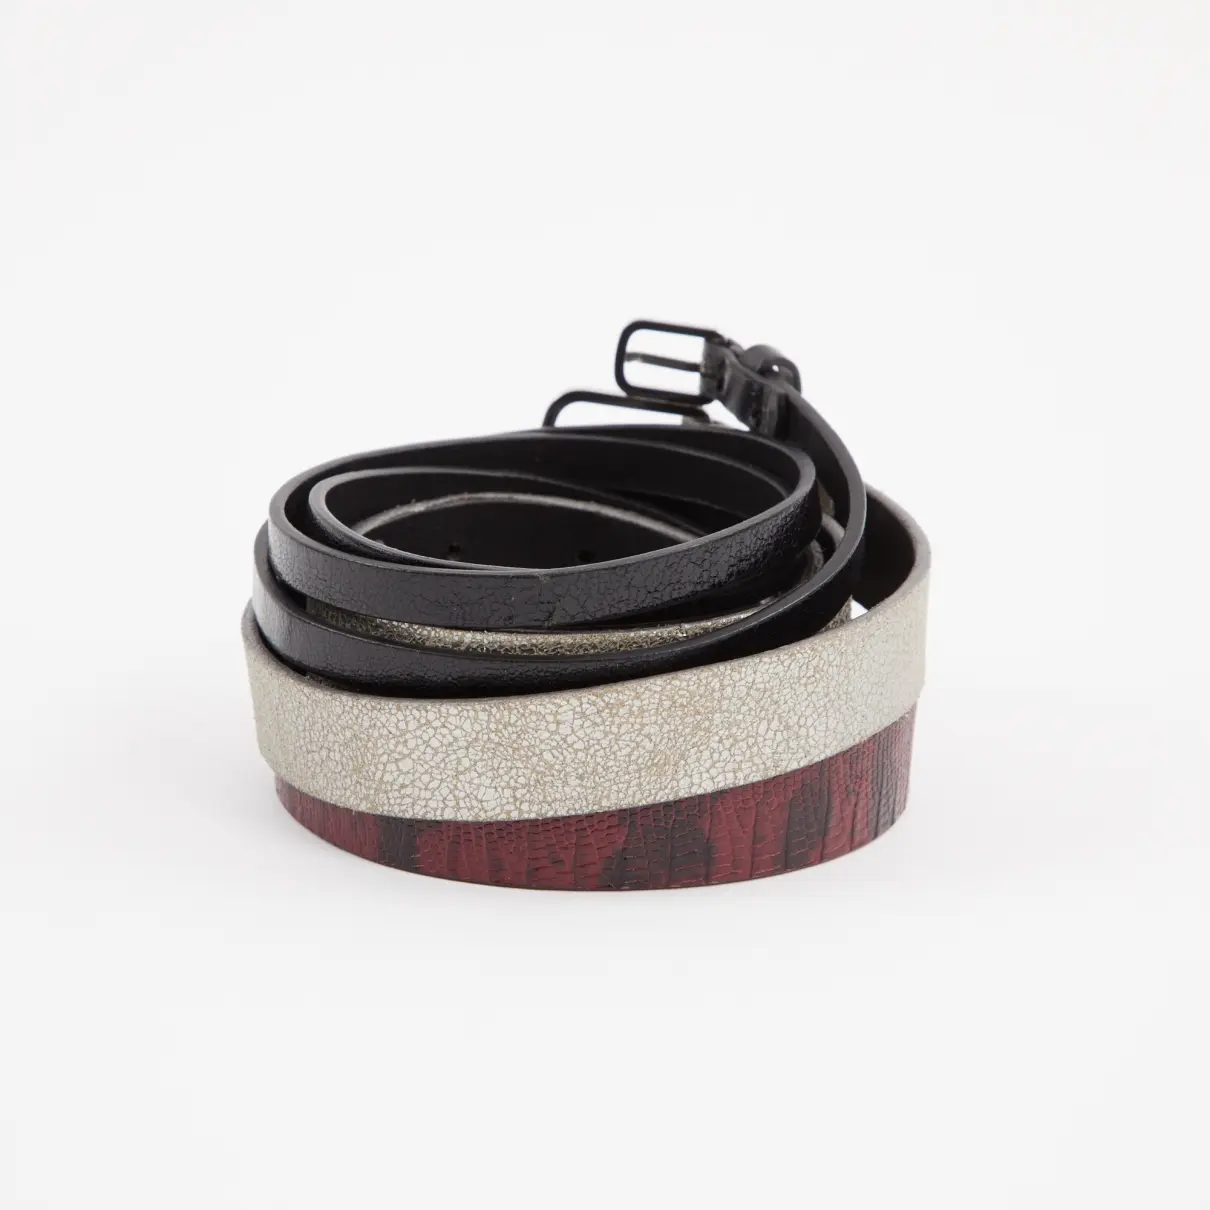 Dries Van Noten Leather belt for sale